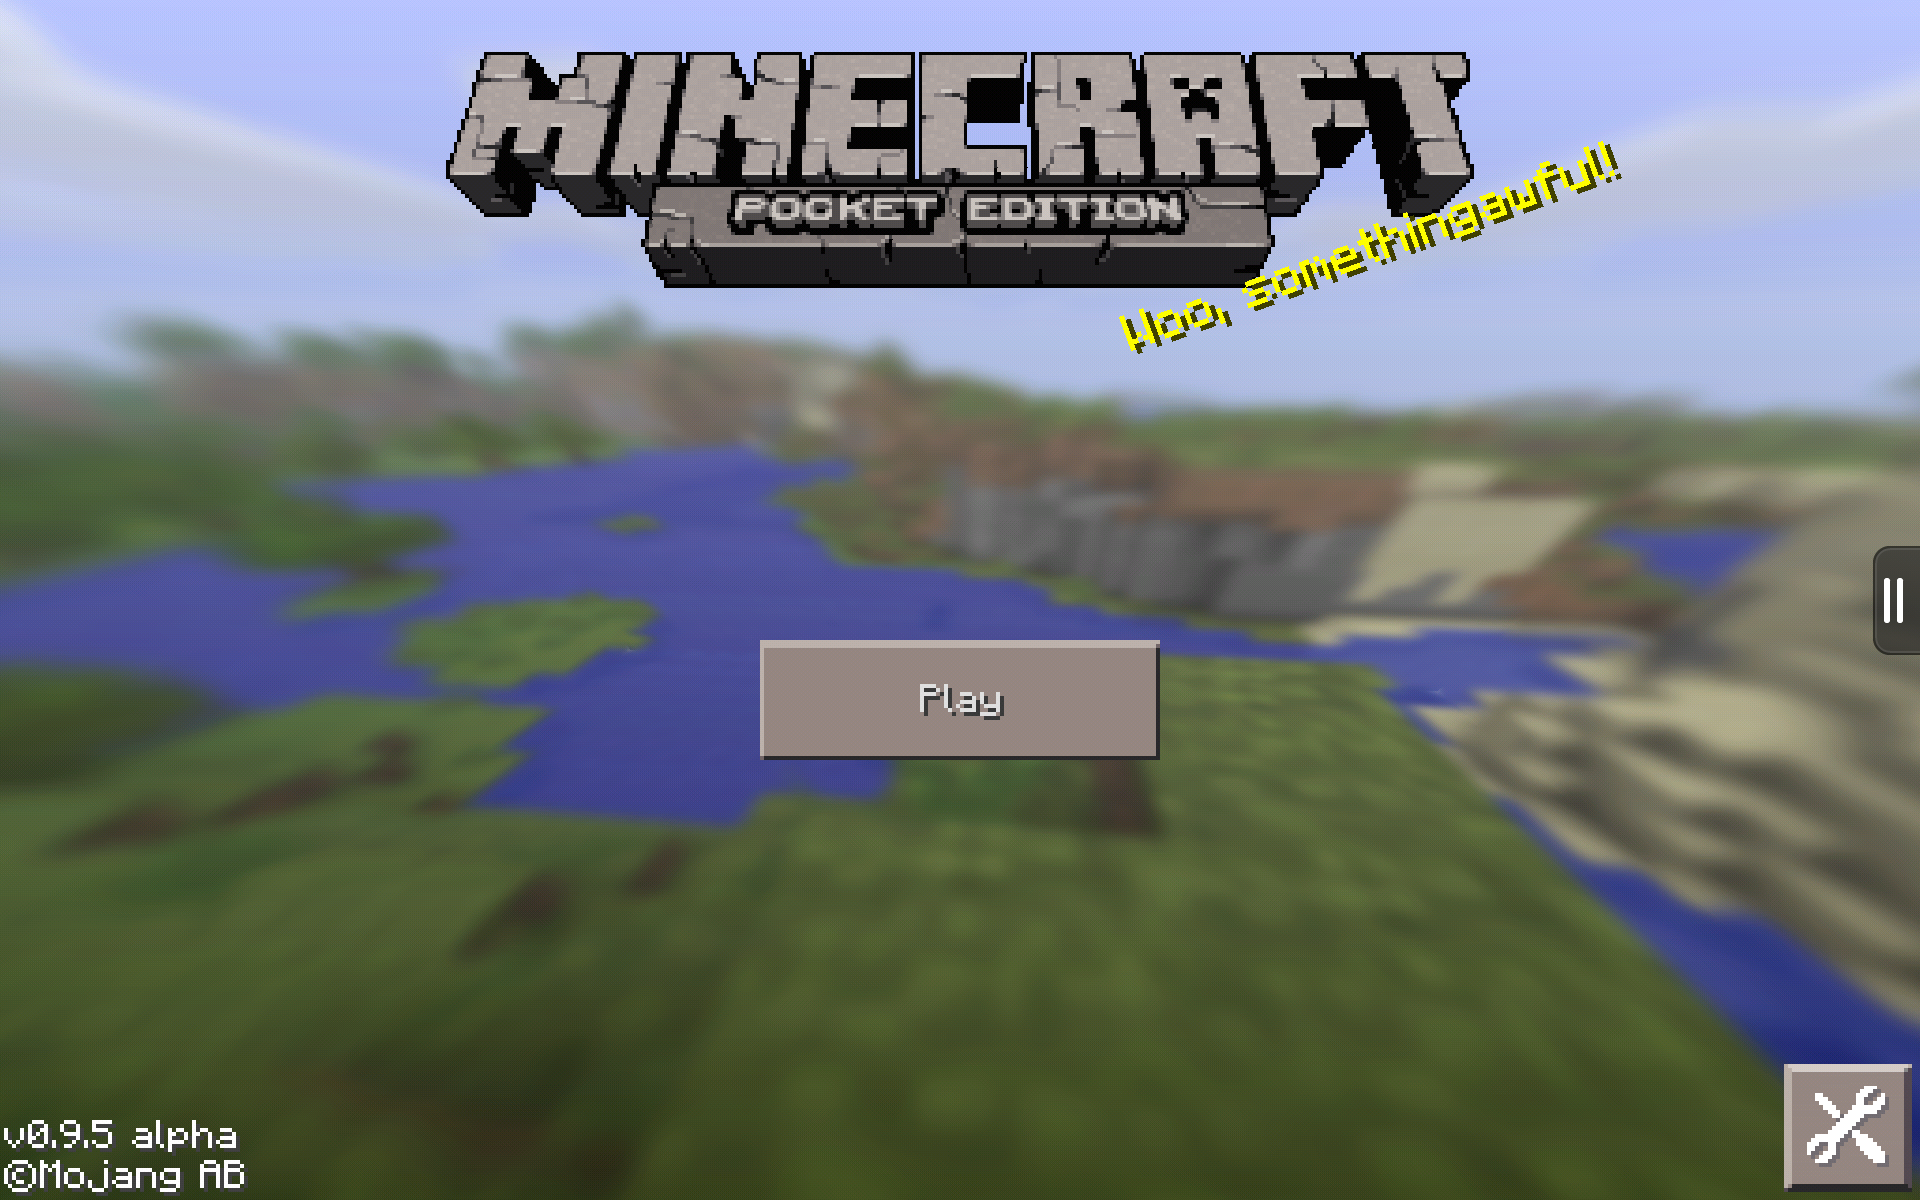 fondo de pantalla de minecraft pocket edition,captura de pantalla,software de videojuegos,pradera,software,juego de pc